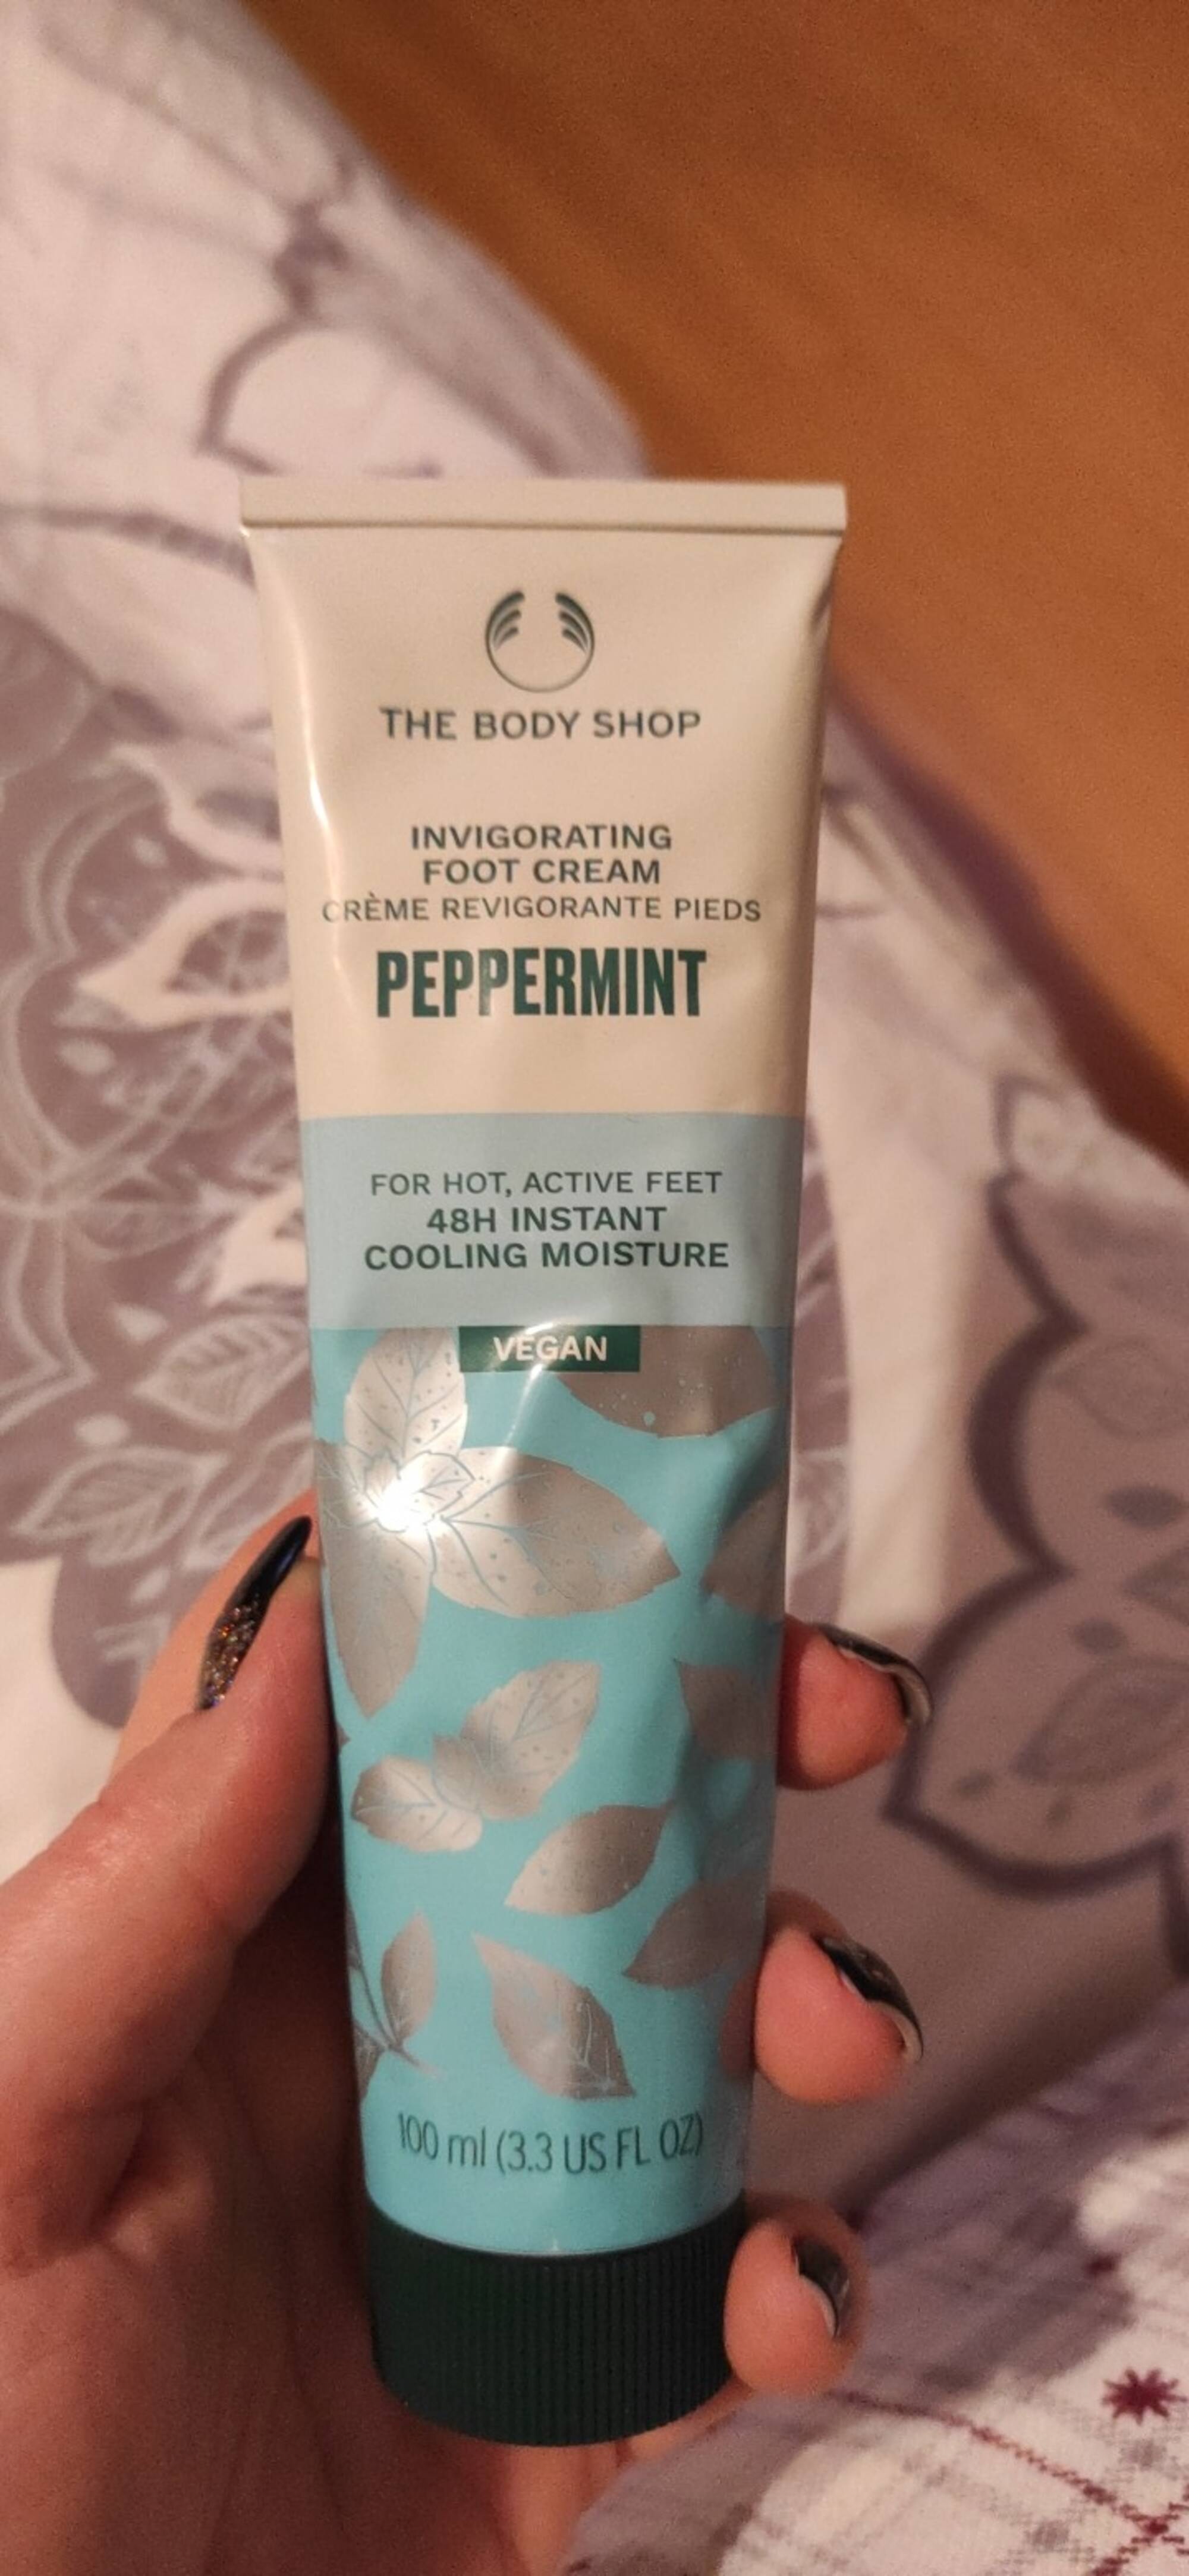 THE BODY SHOP - Peppermint - Crème revigorante pieds